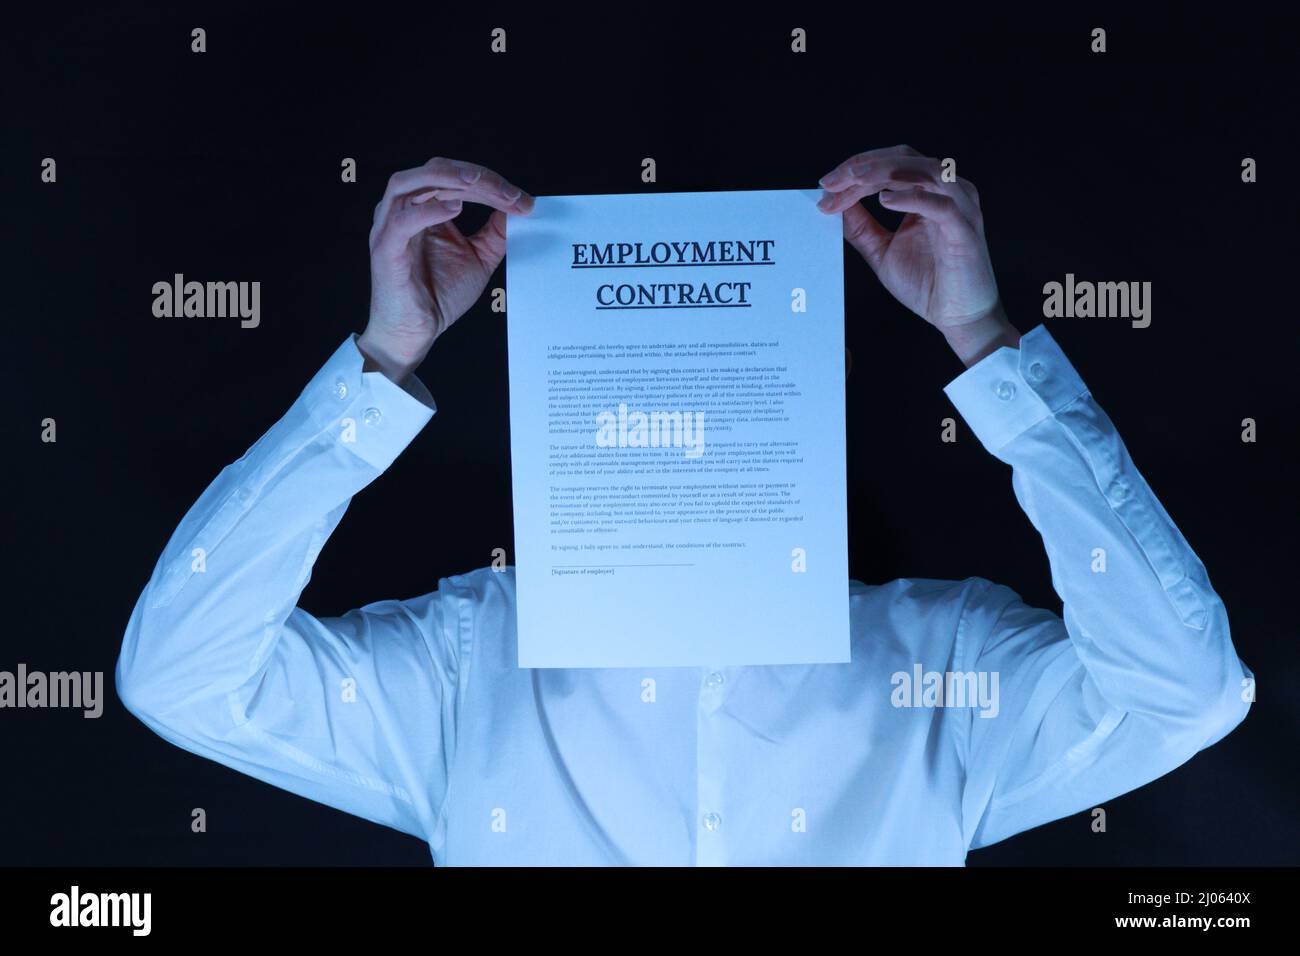 Der gesichtslose Mitarbeiter - Ein Mann in einem weißen Hemd, der vor einem schwarzen Hintergrund steht, hält einen Mitarbeitervertrag über seinem Gesicht Stockfoto